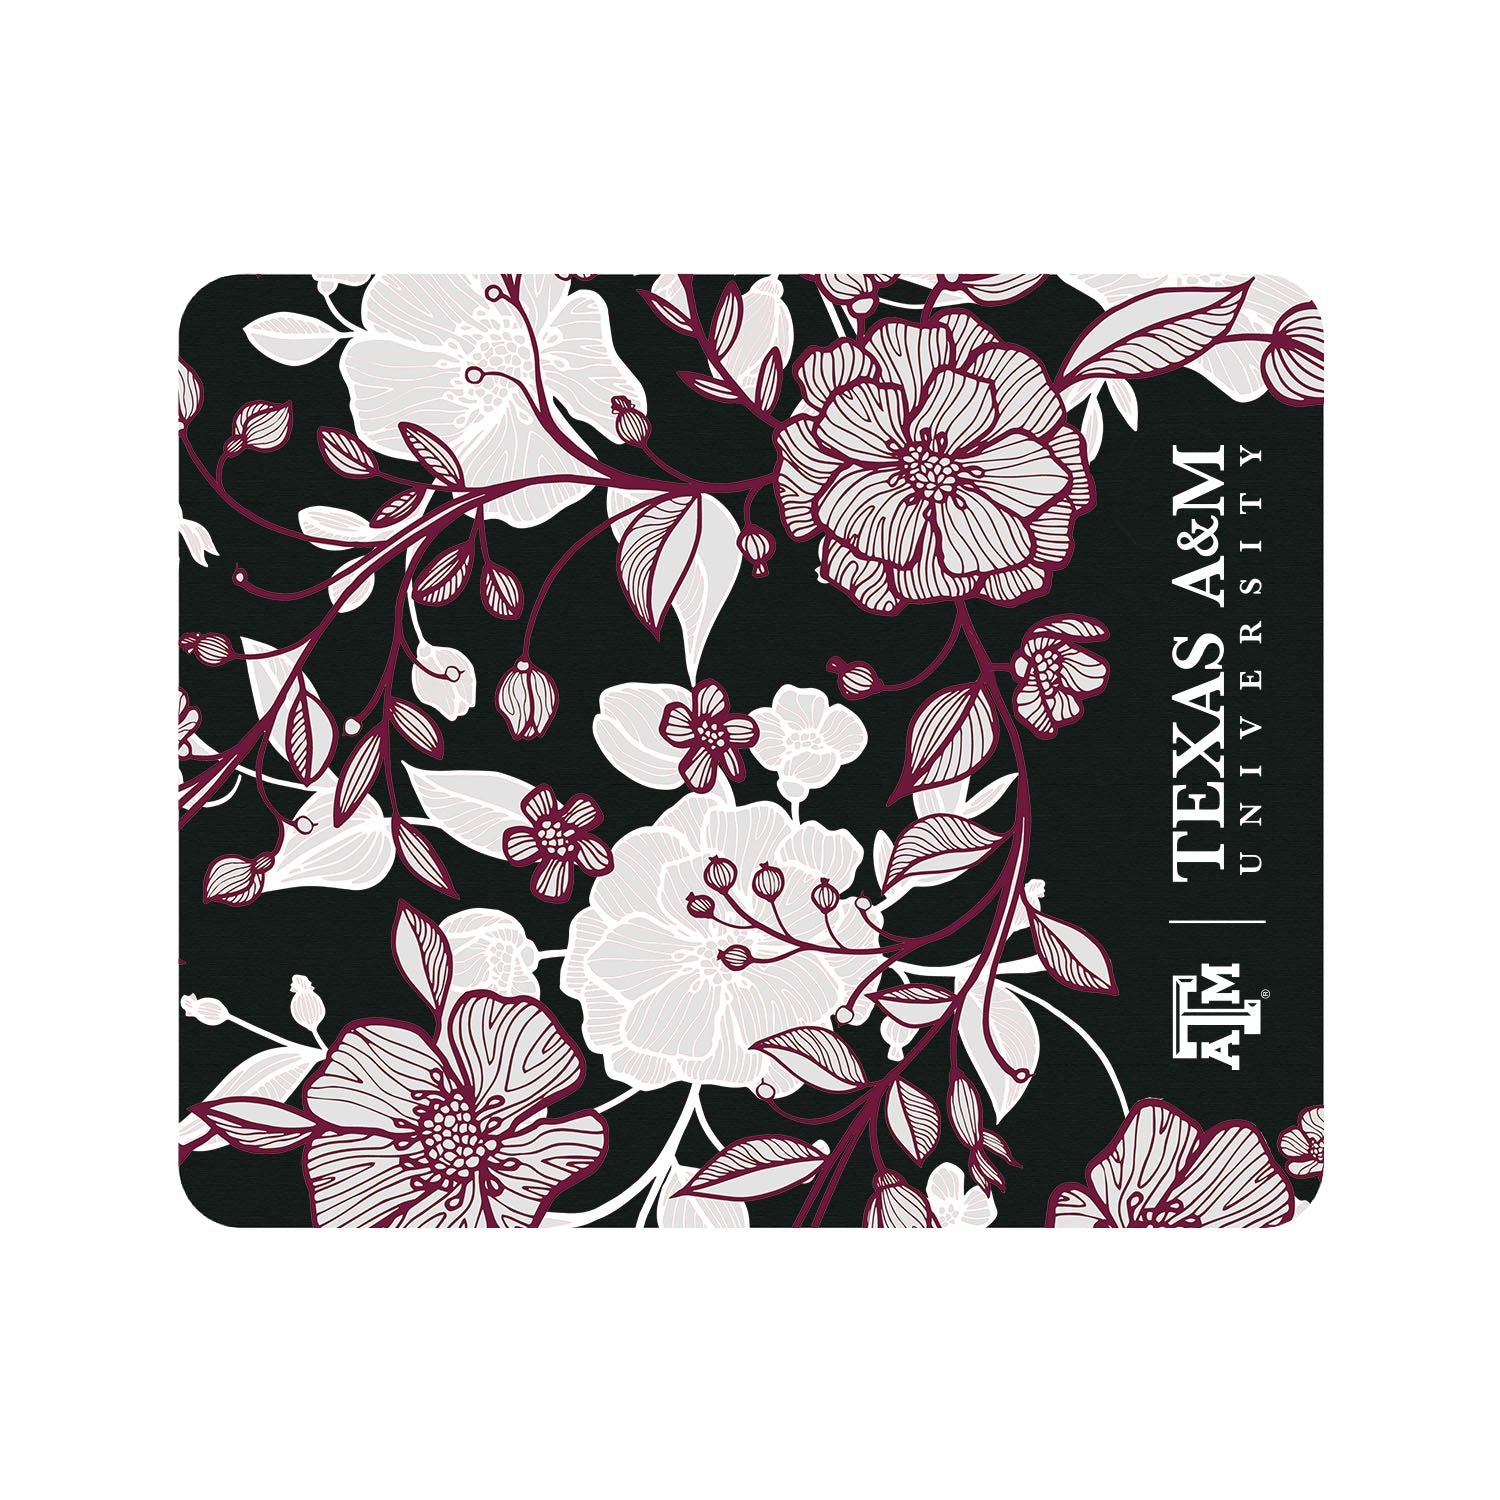 Texas A&M University Black Mousepad, Floral Lace V1